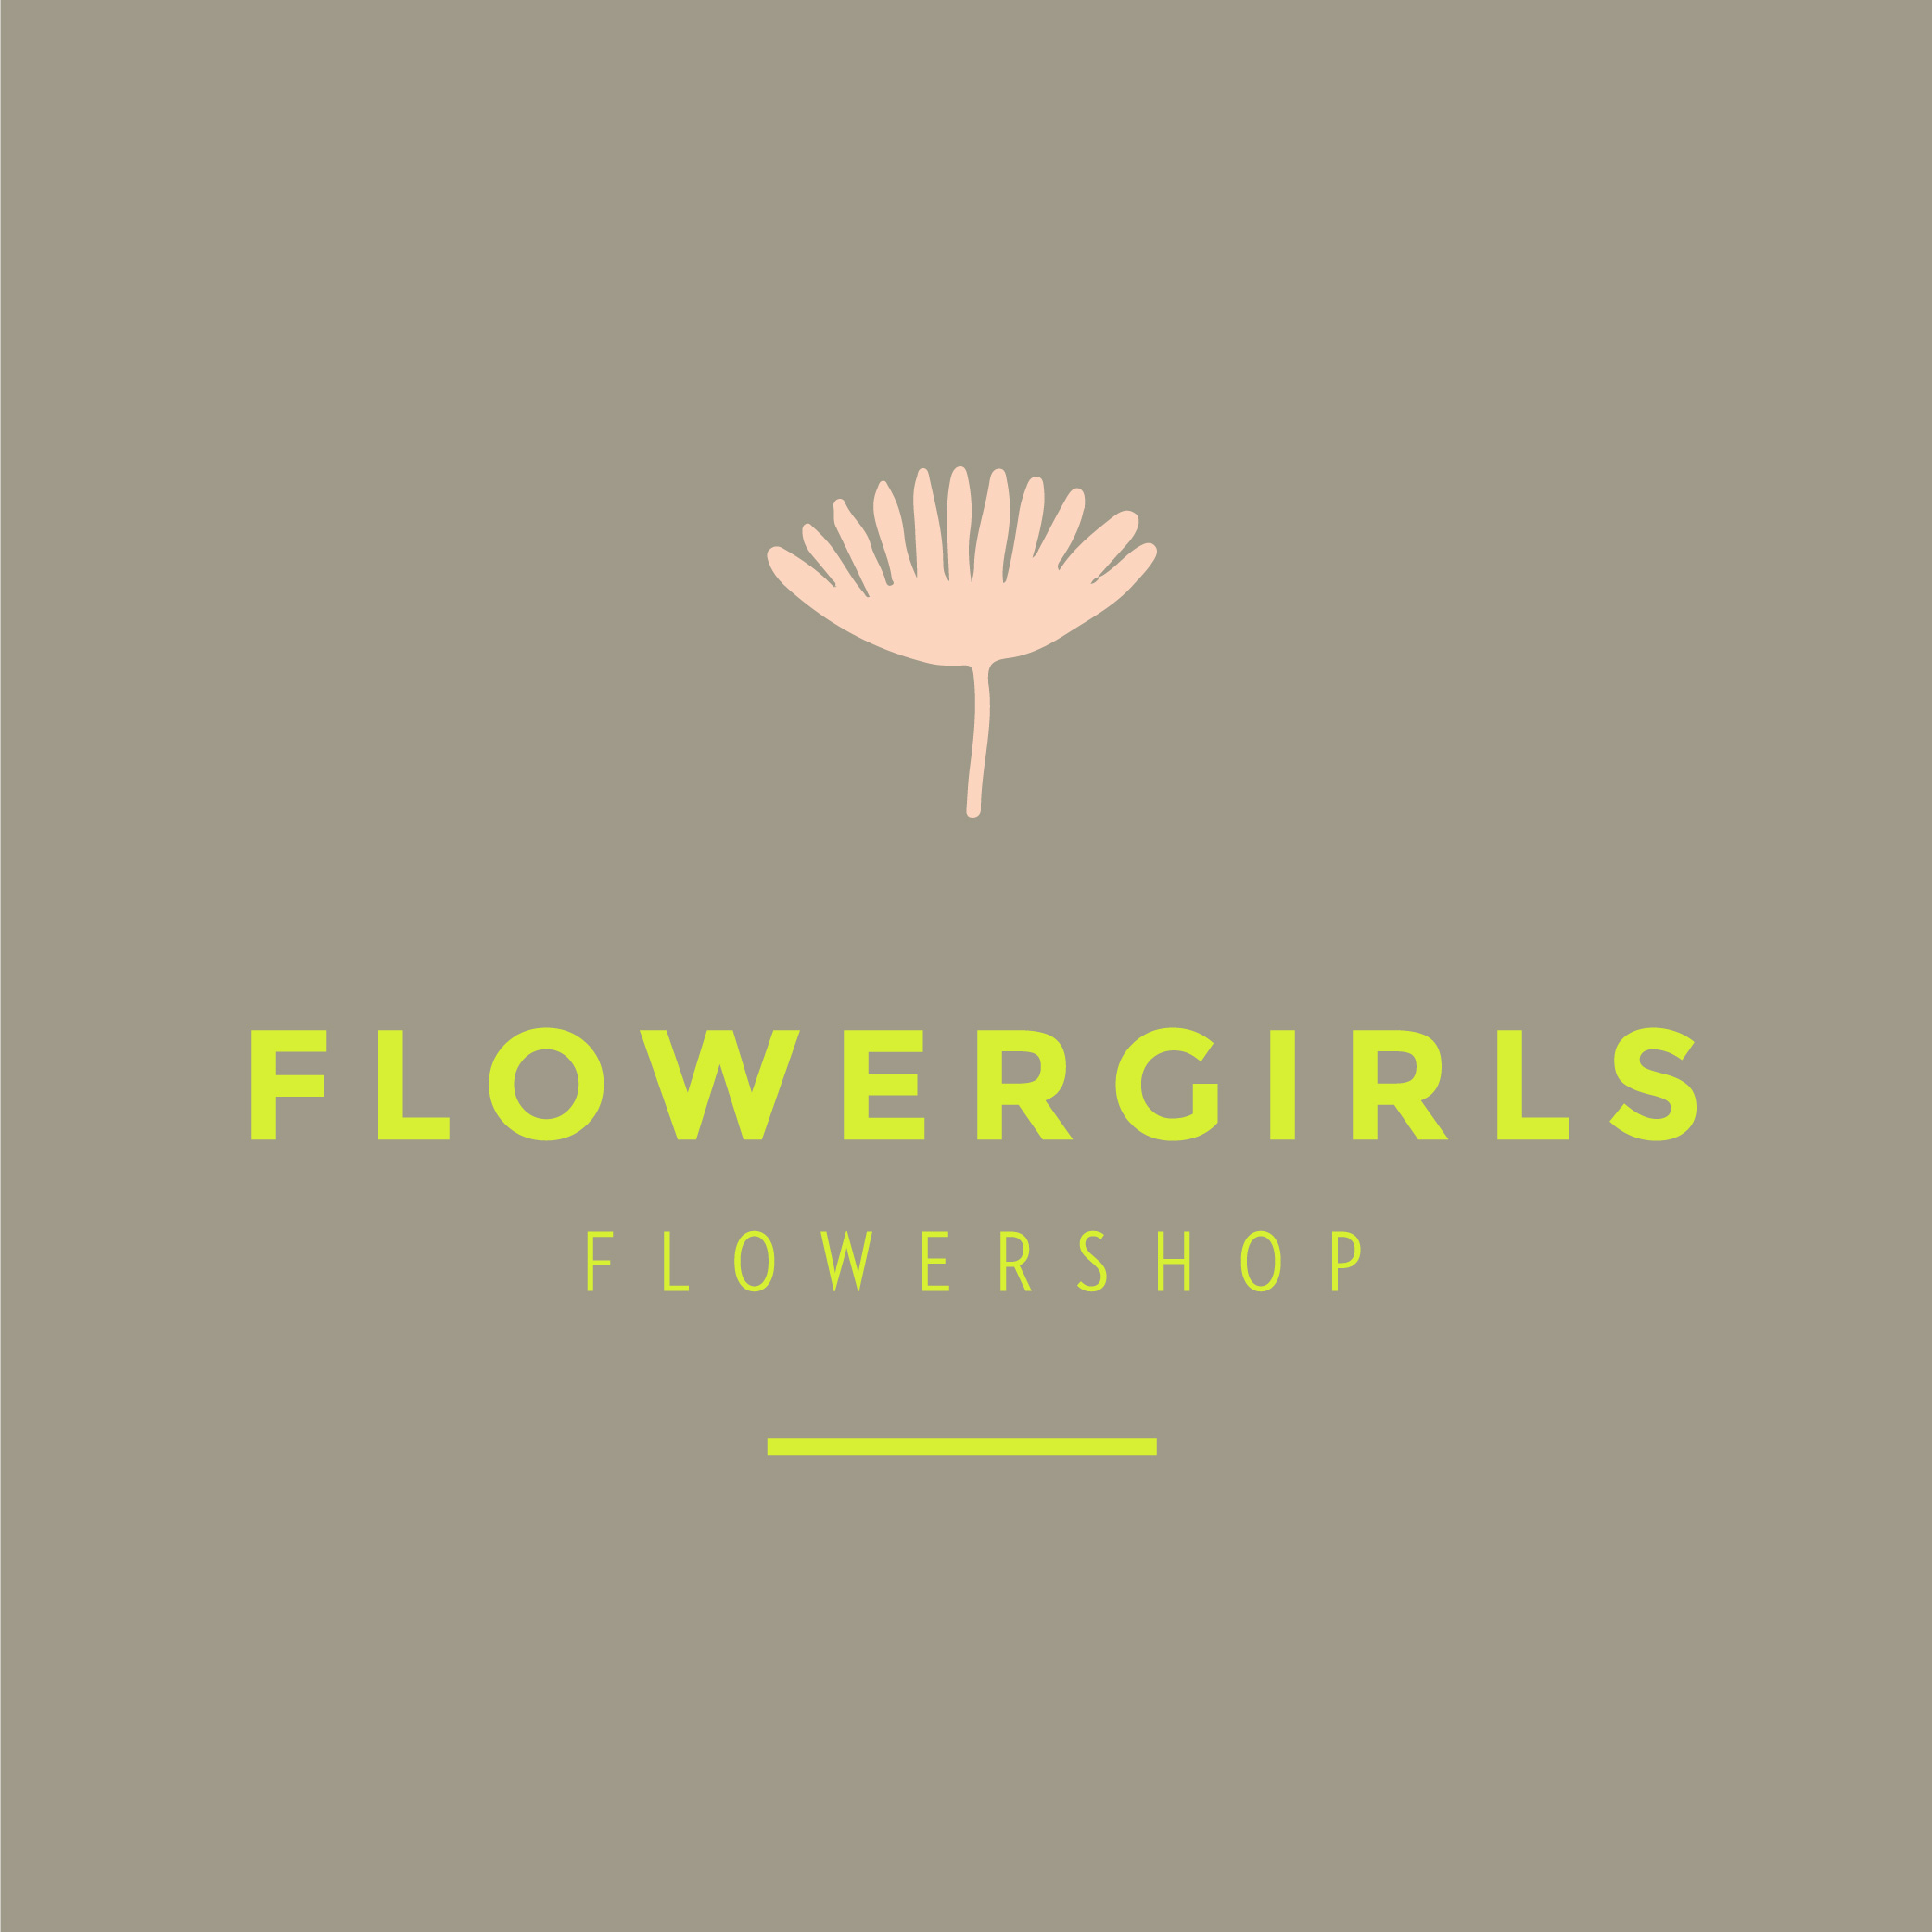 Flowergirls Flowershop